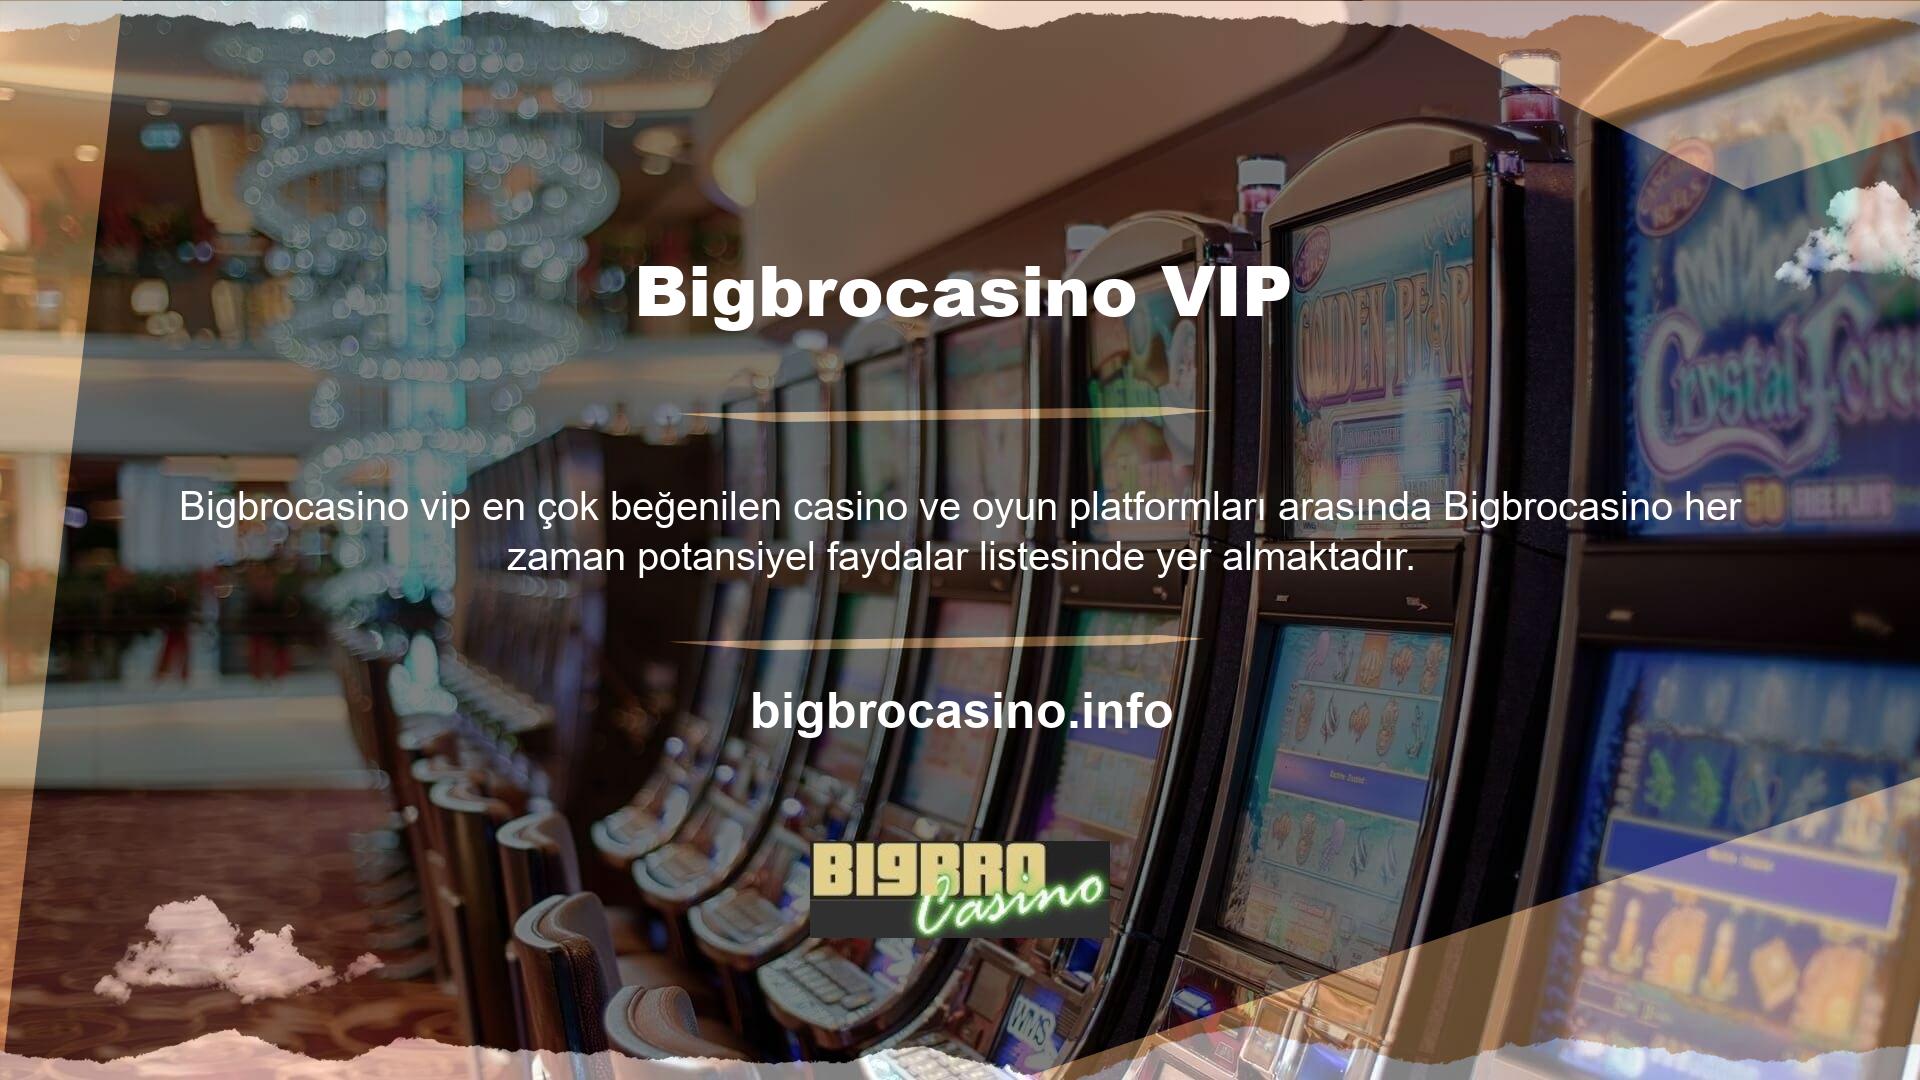 Çevrimiçi casino platformlarının ortaya çıkışı, daha kazançlı VIP deneyimlerine olanak tanıyor